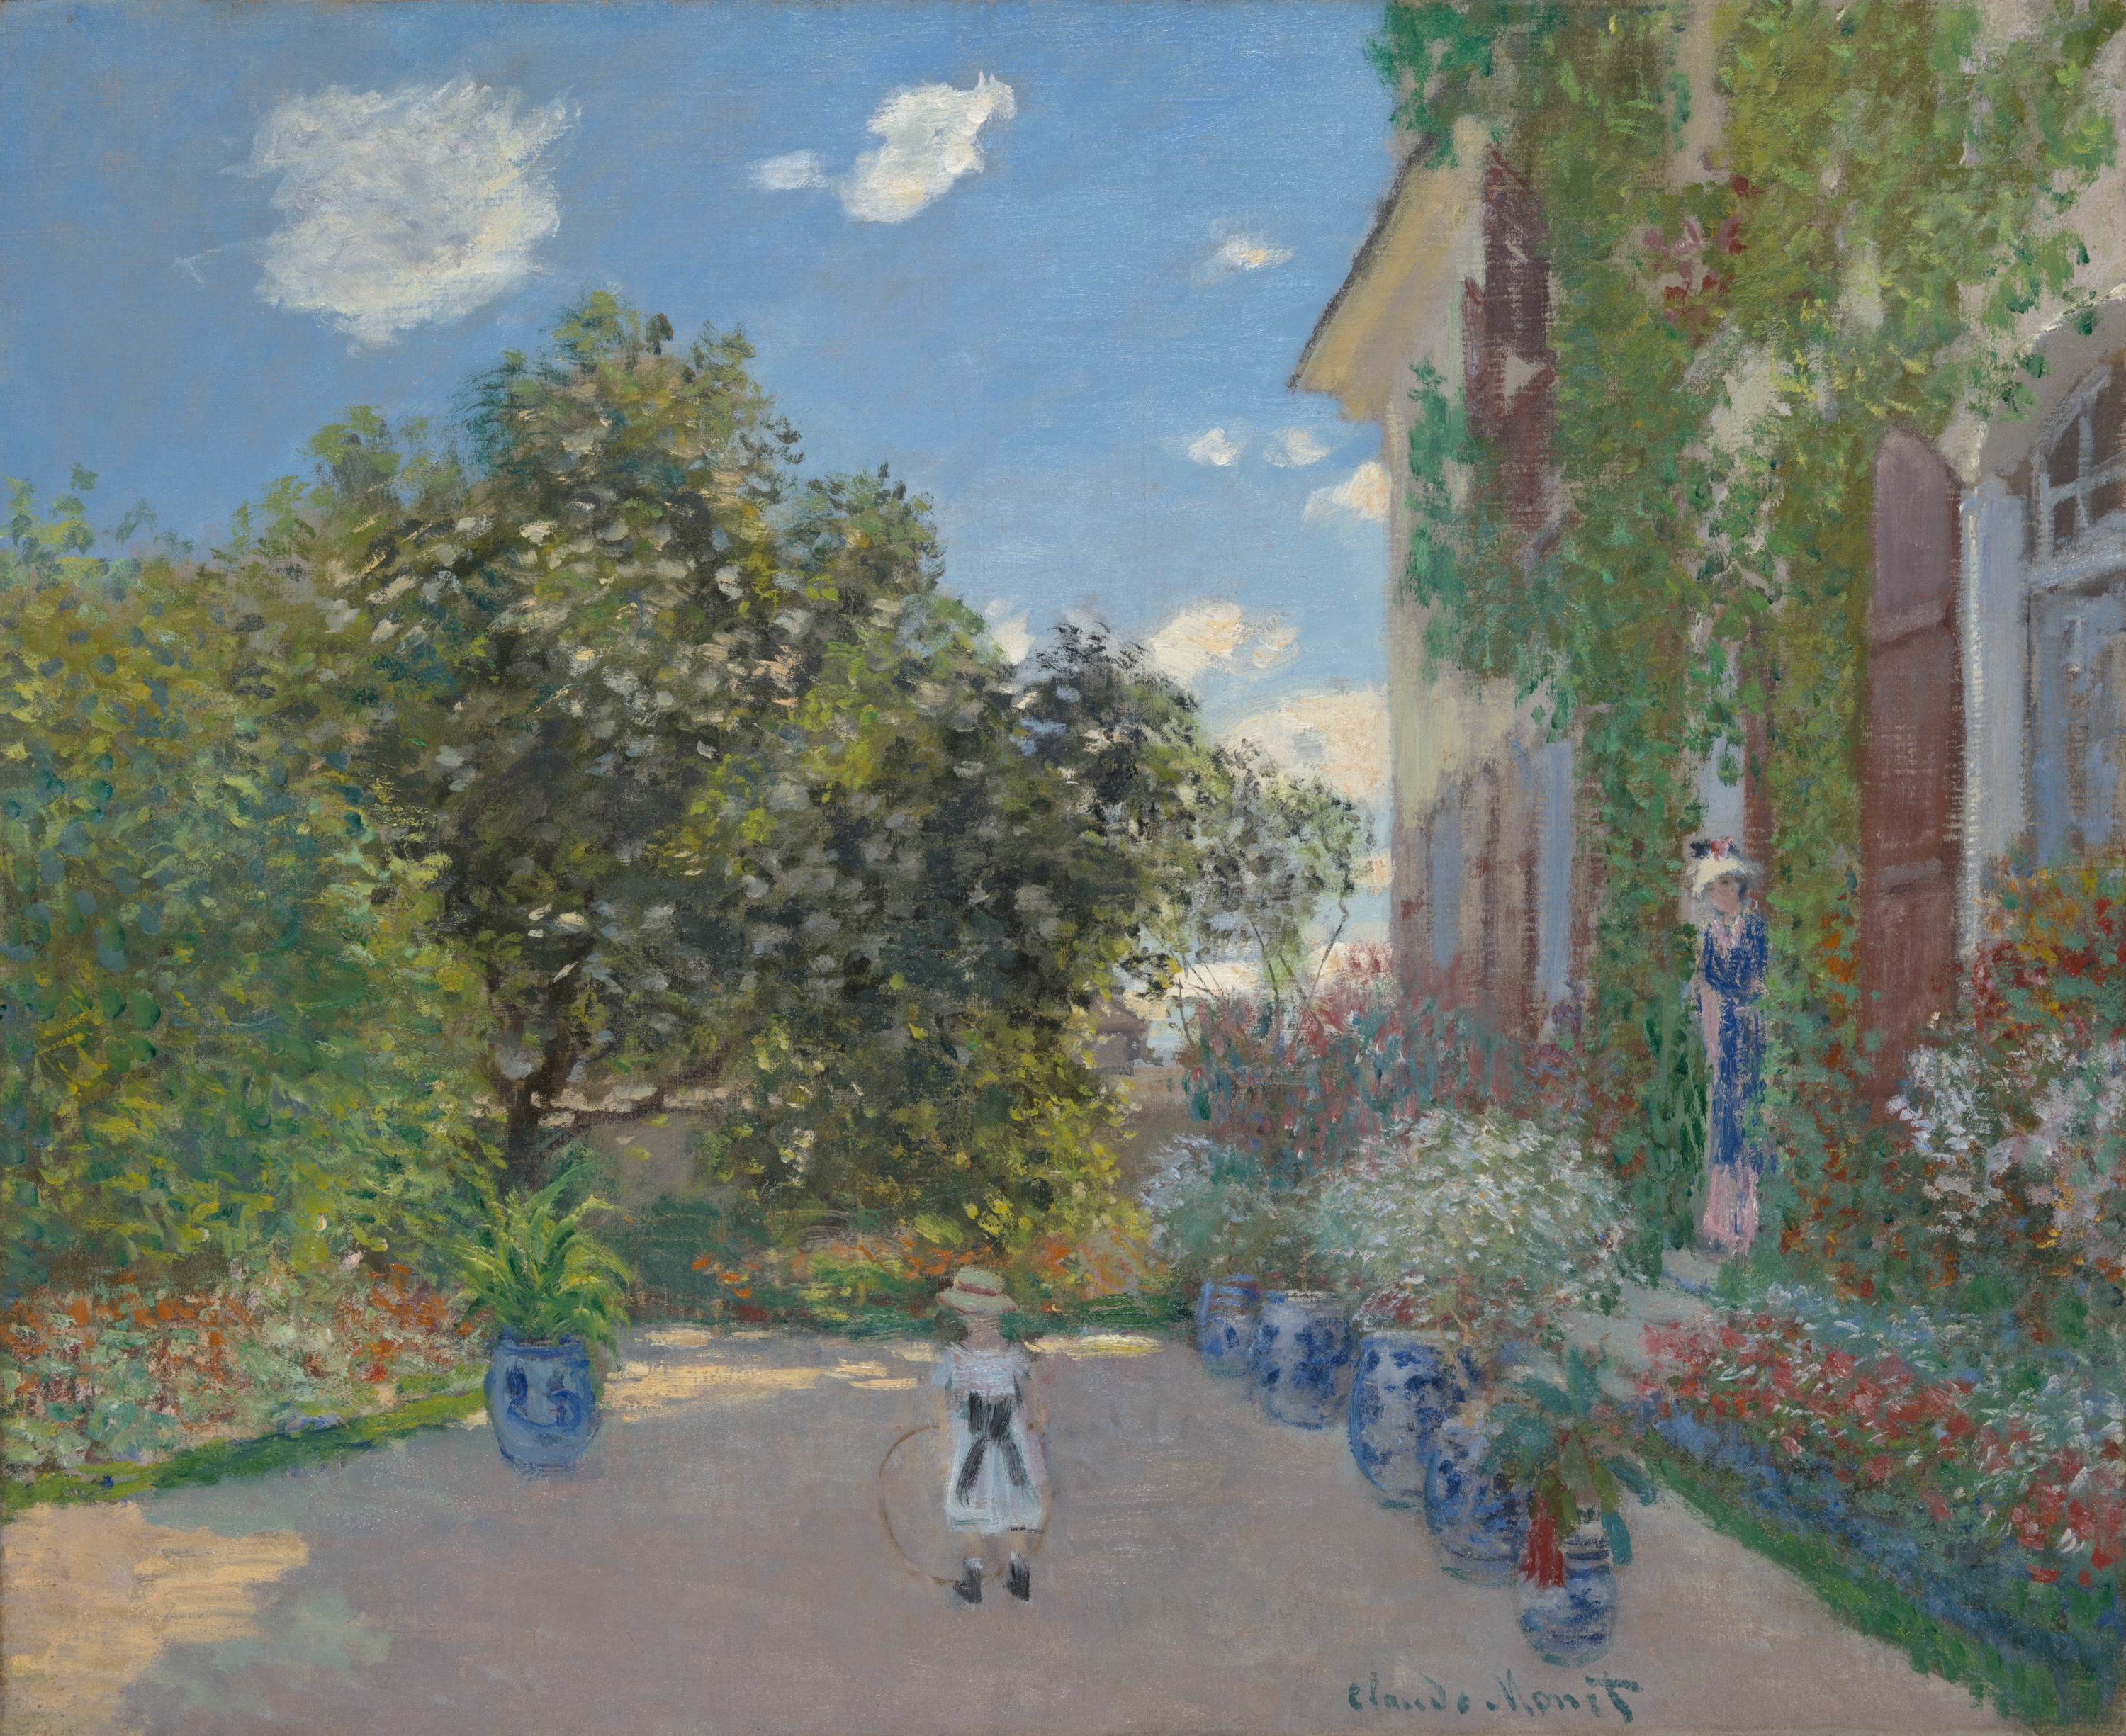 A művész háza Argenteuil-ben by Claude Monet - 1873 - 60.2 × 73.3 cm 